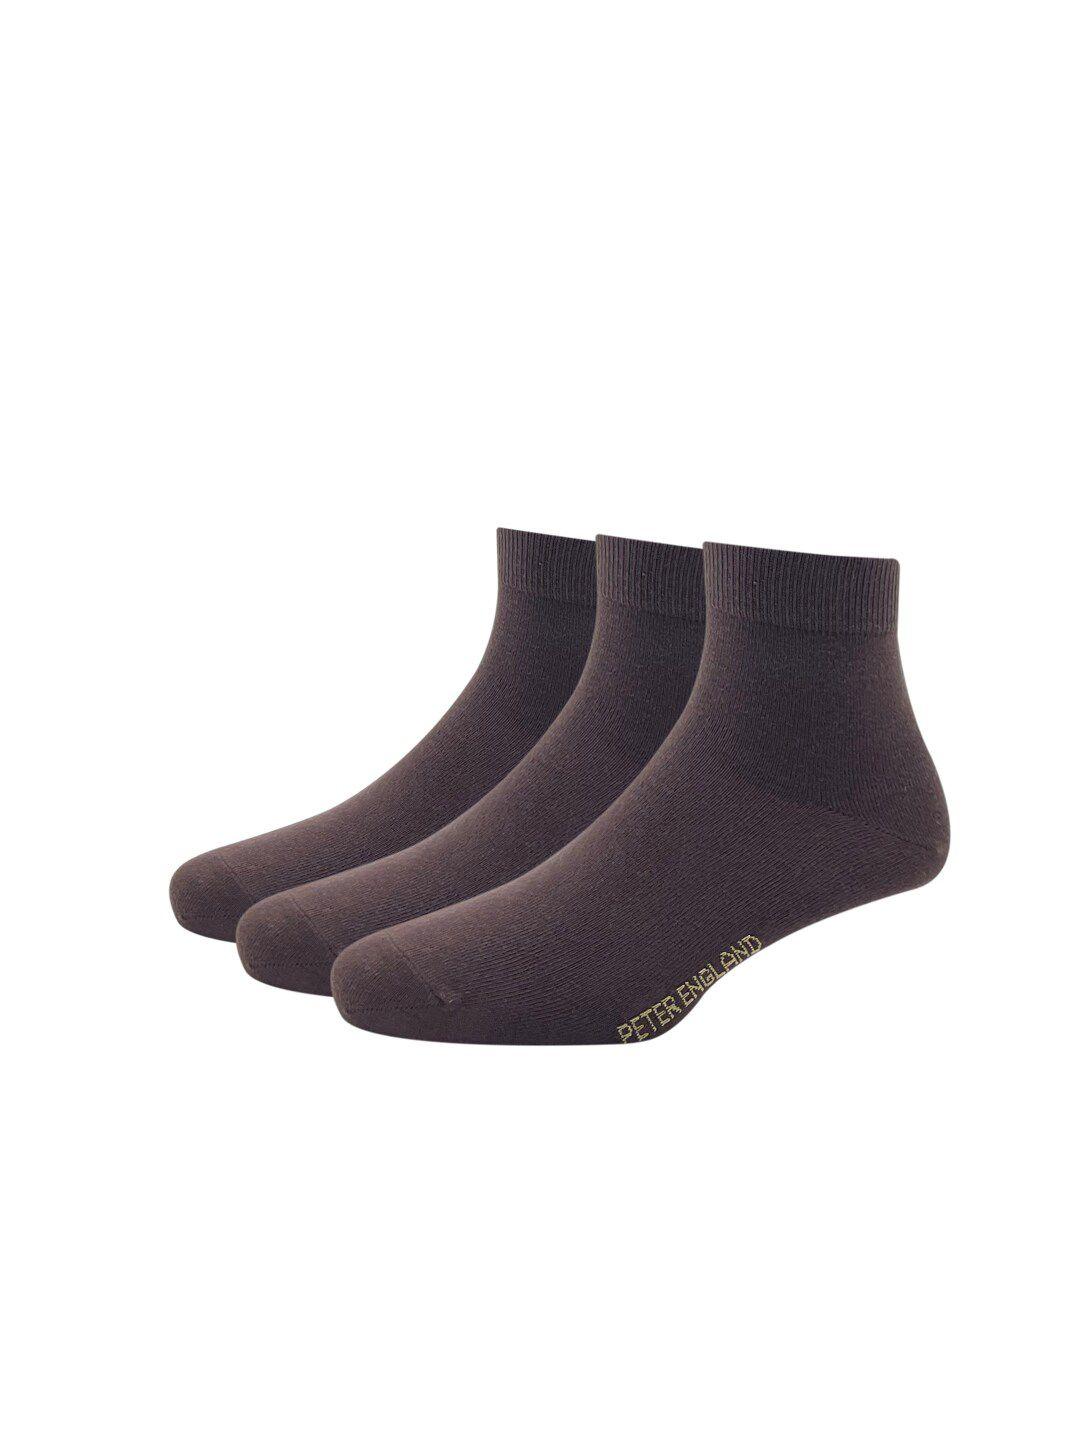 peter england men brown pack of 3 cotton full length socks